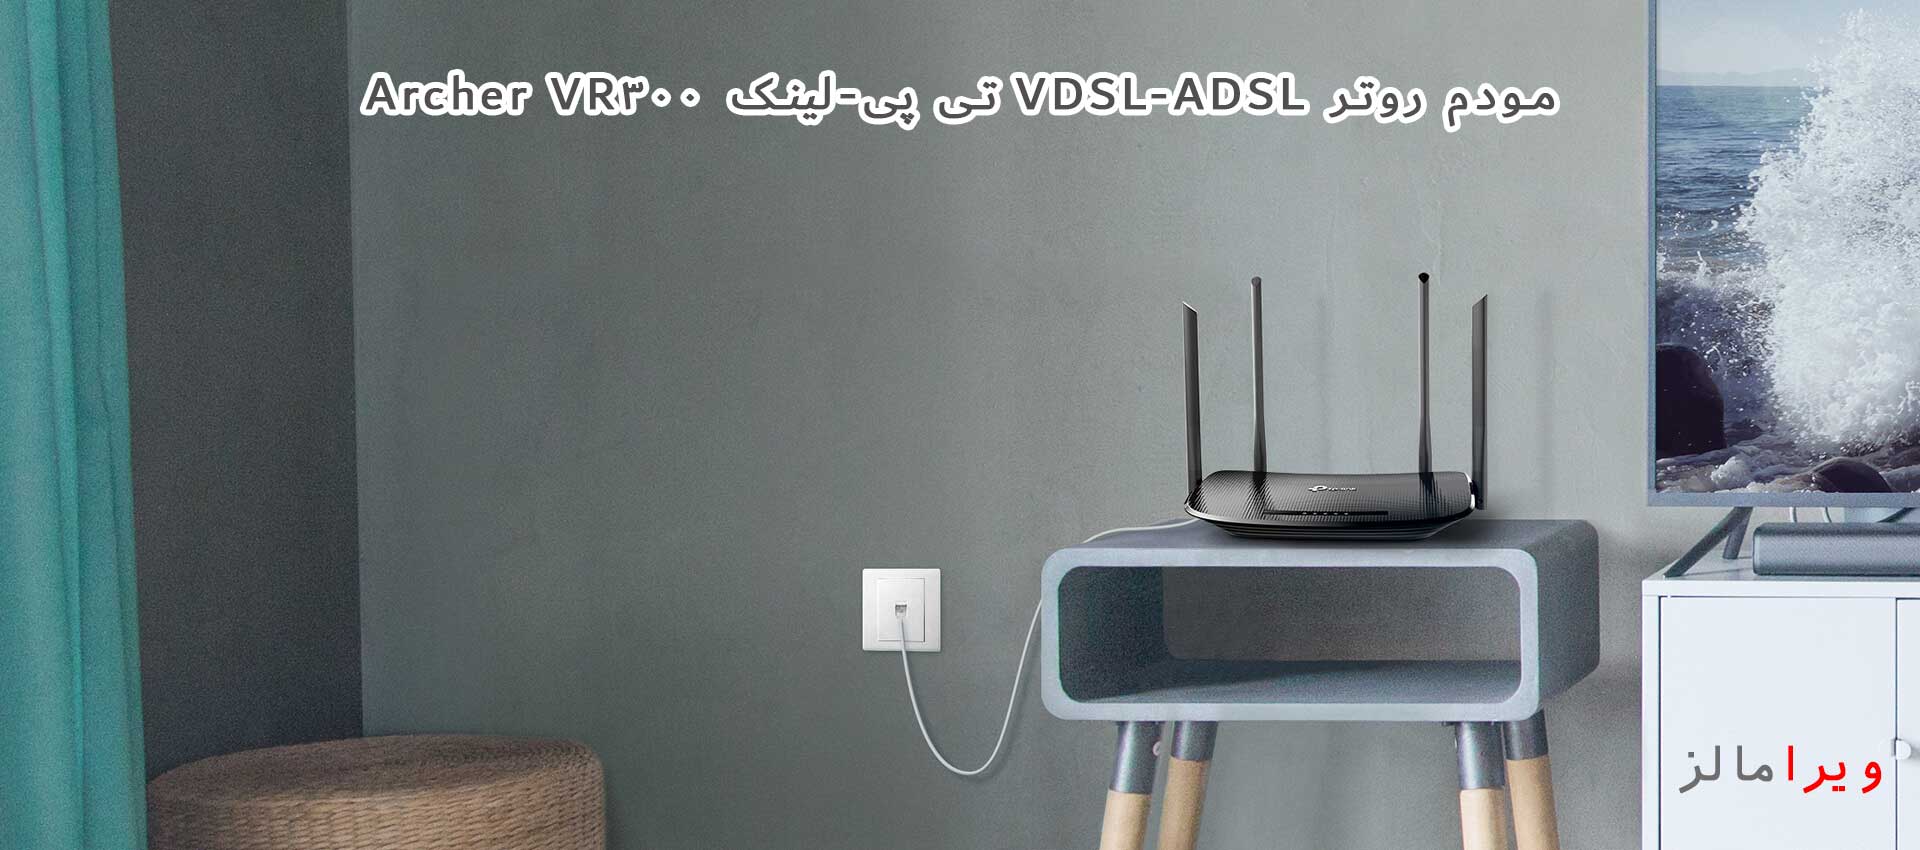 مودم روتر VDSL-ADSL تی پی-لینک Archer VR300 در منزل و اداره